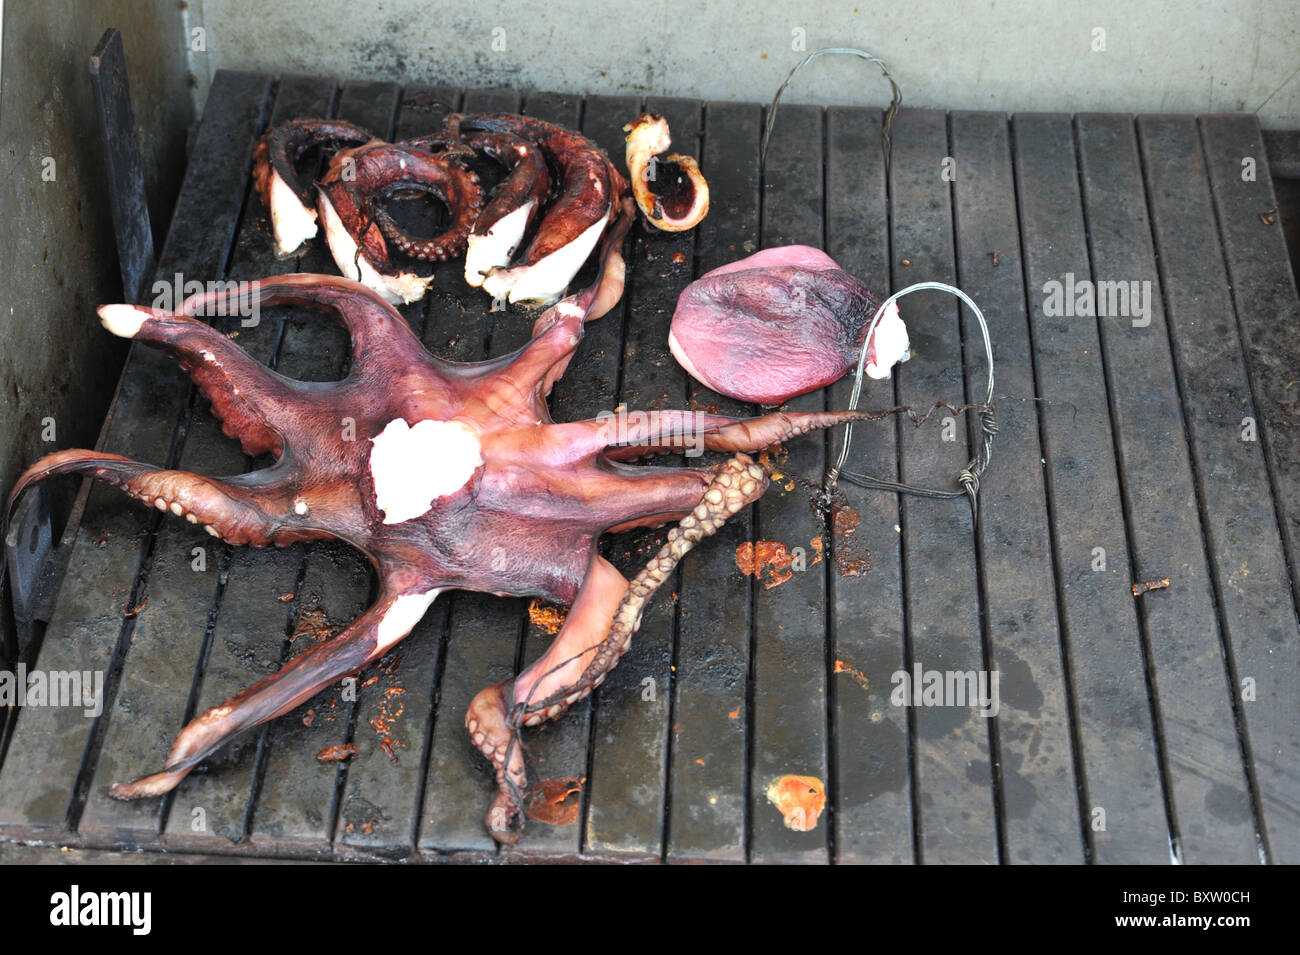 Il polpo fresco essendo alla griglia all'aperto sul barbecue - immagine presa in Rethimno, Creta, Grecia Foto Stock